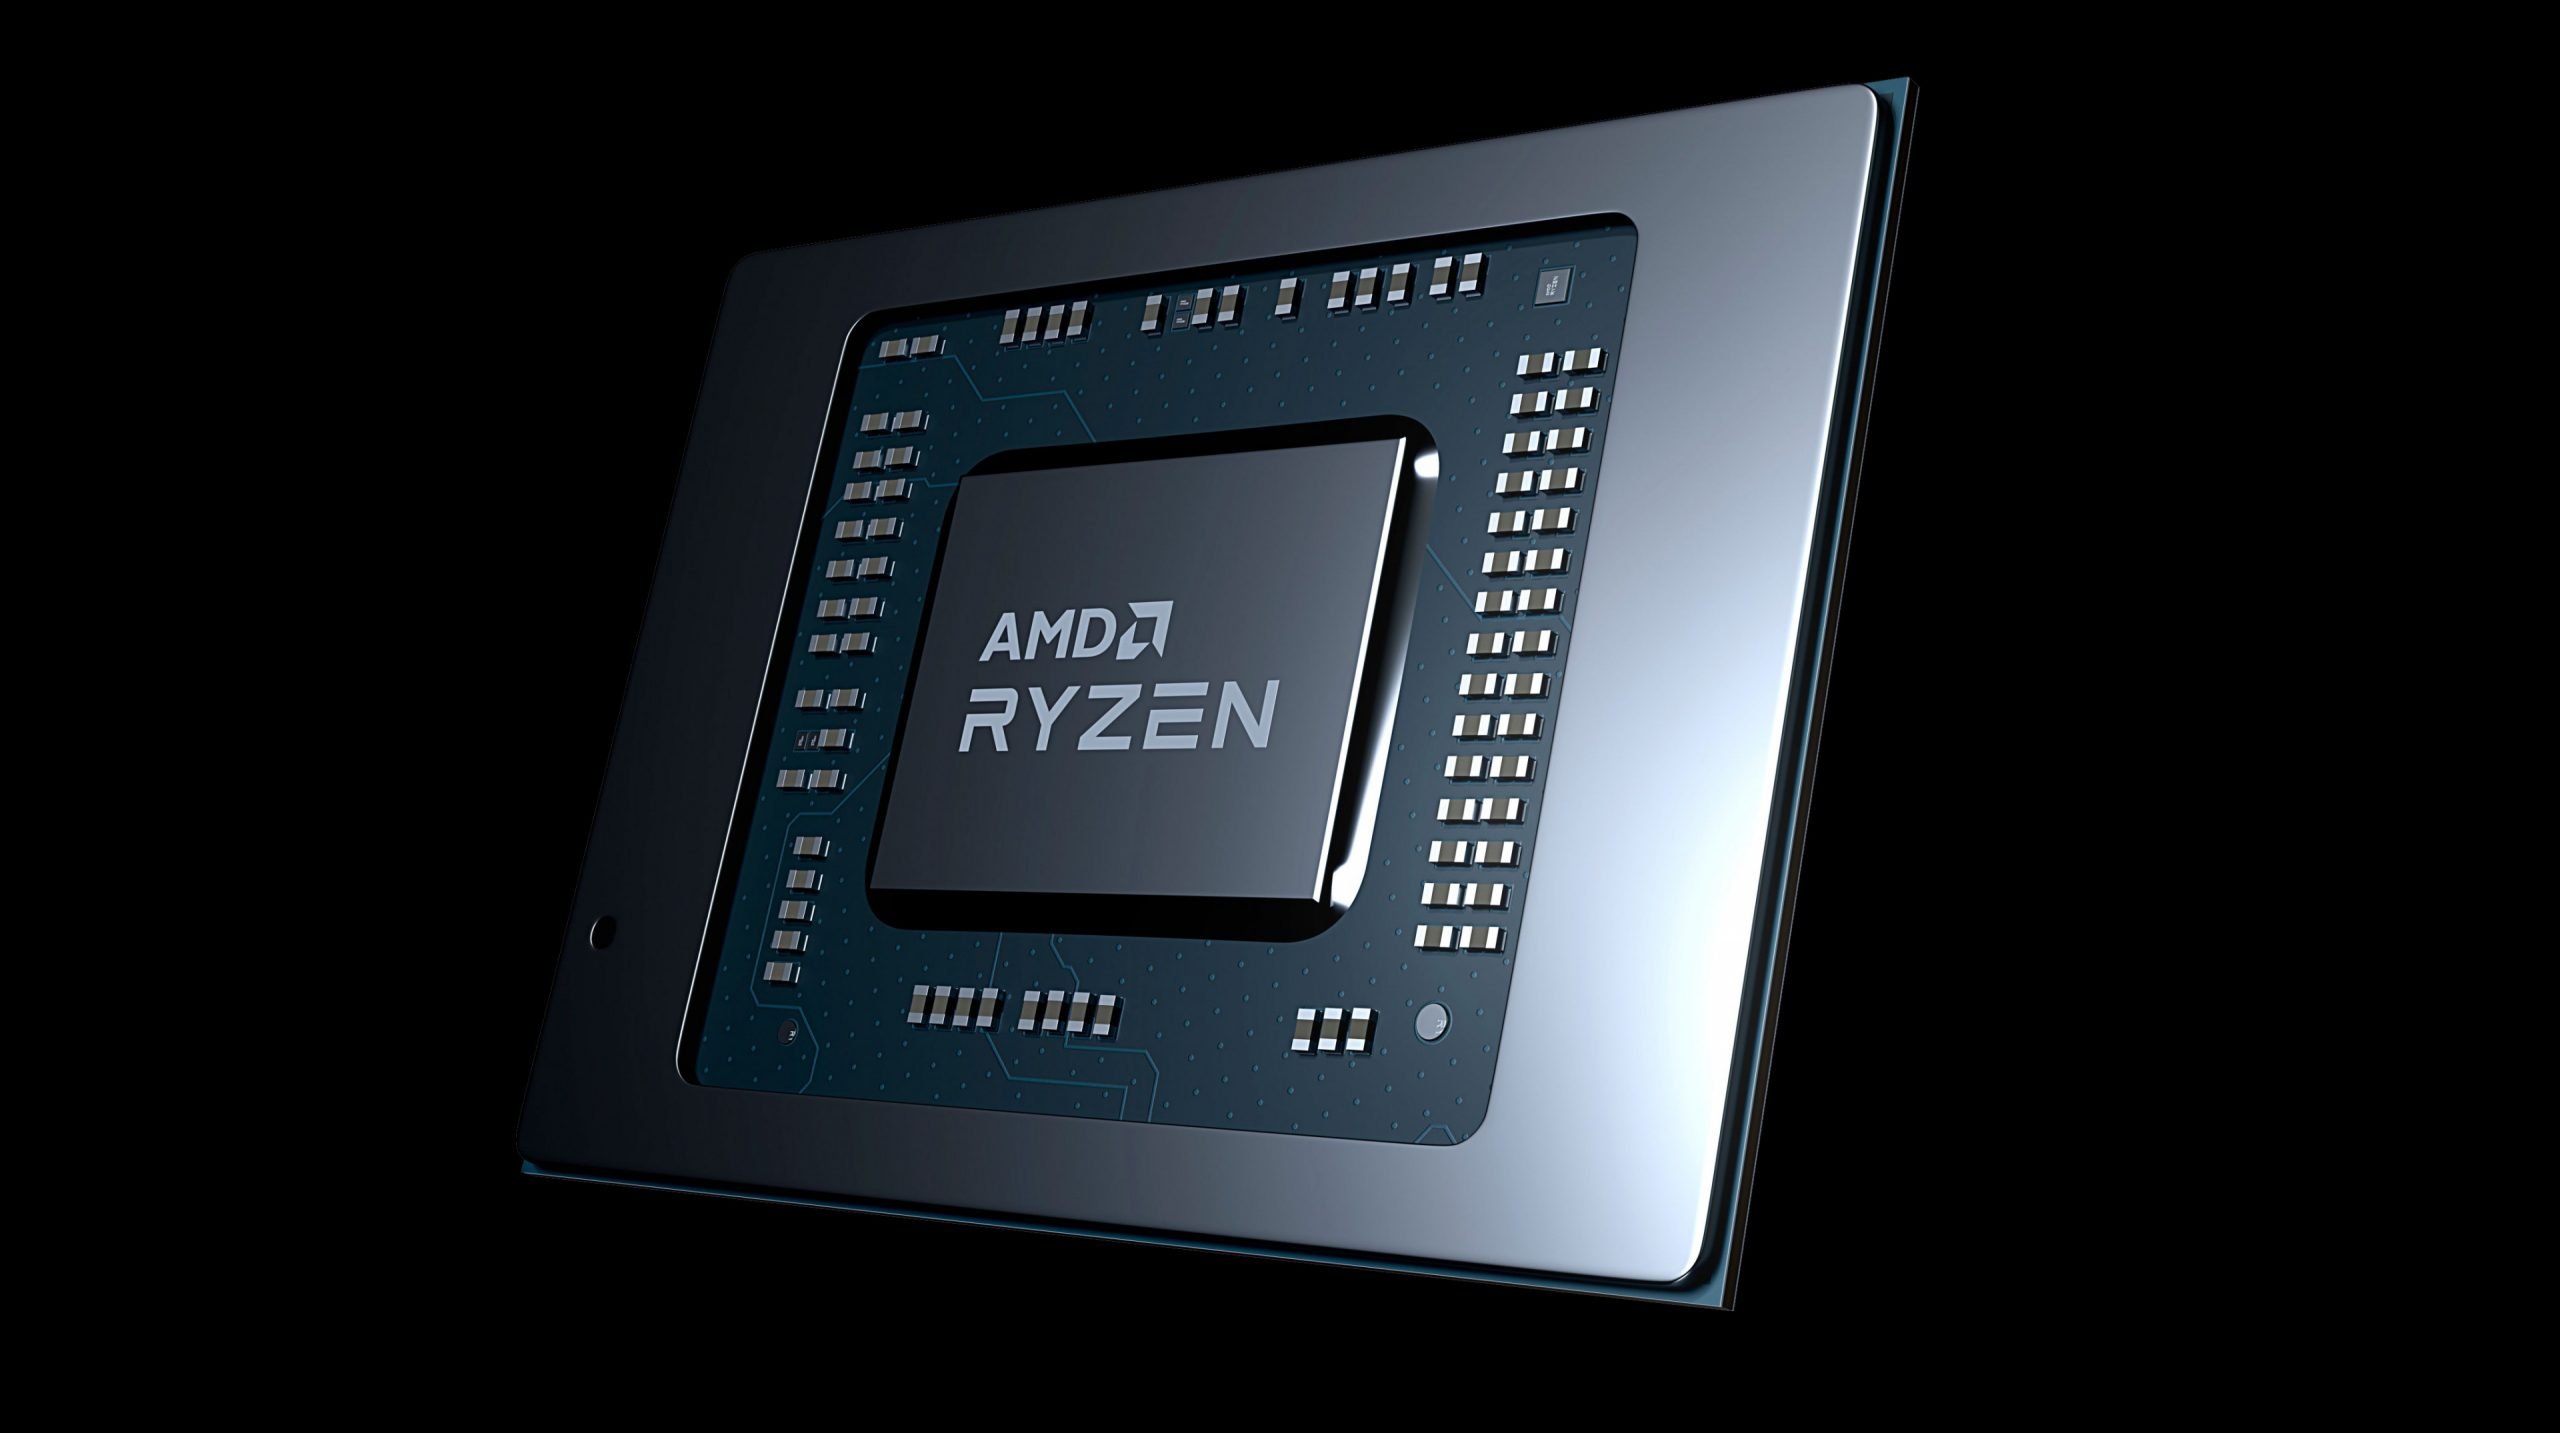 AMD-Ryzen-Mobil-APU-CPU-Islemci-scaled.jpg